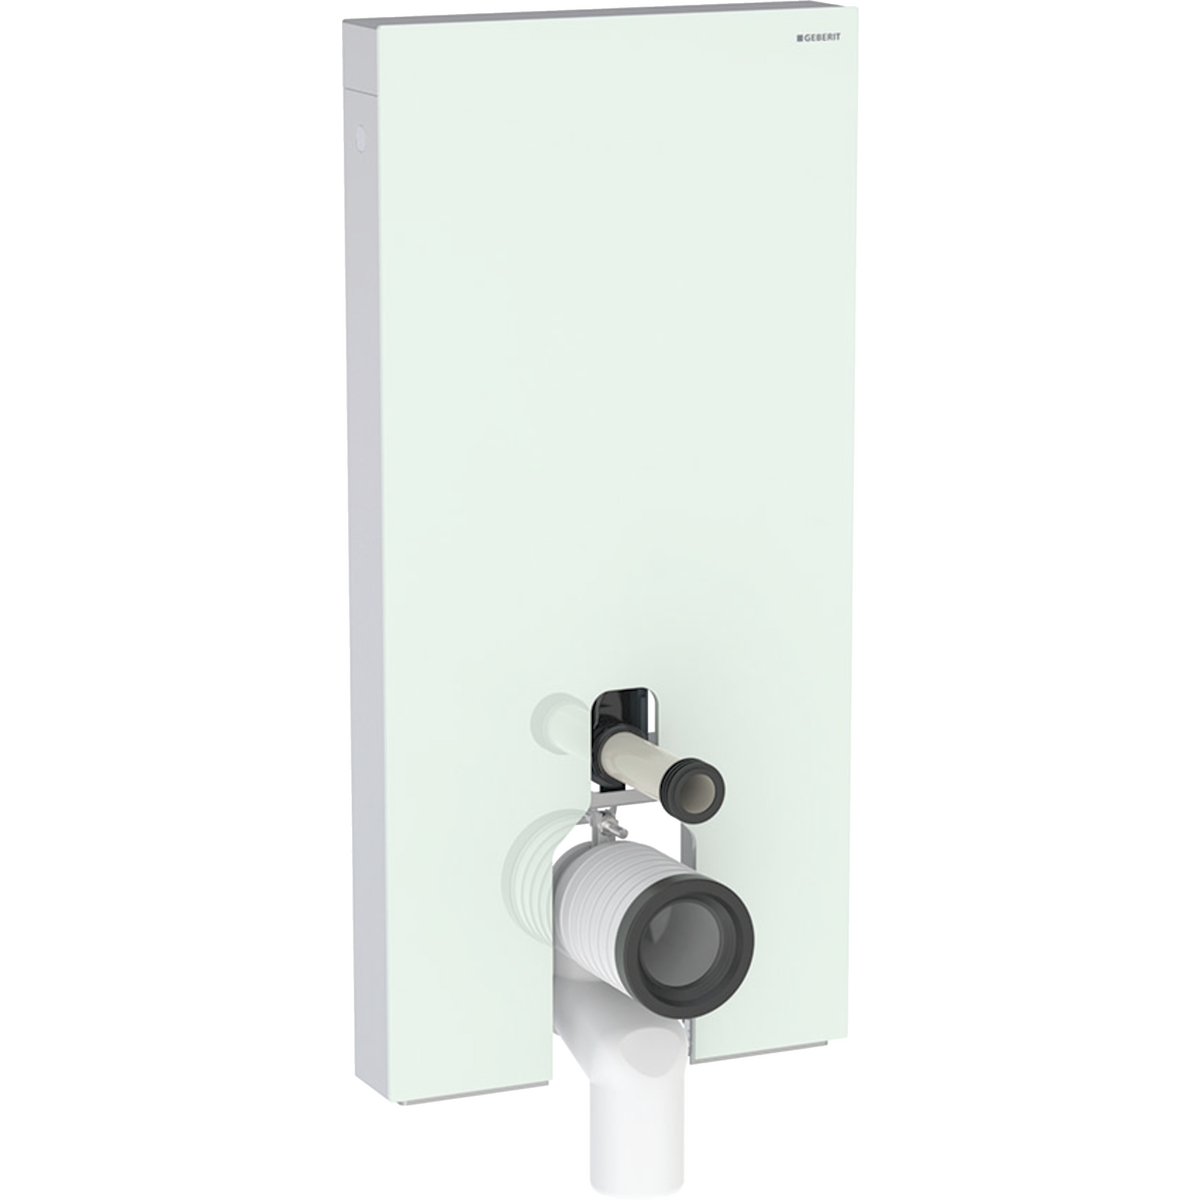 Monolith Sanitärmodul für Stand-WC, 101 cm, Frontverkleidung aus Glas: Glas mint, Aluminium